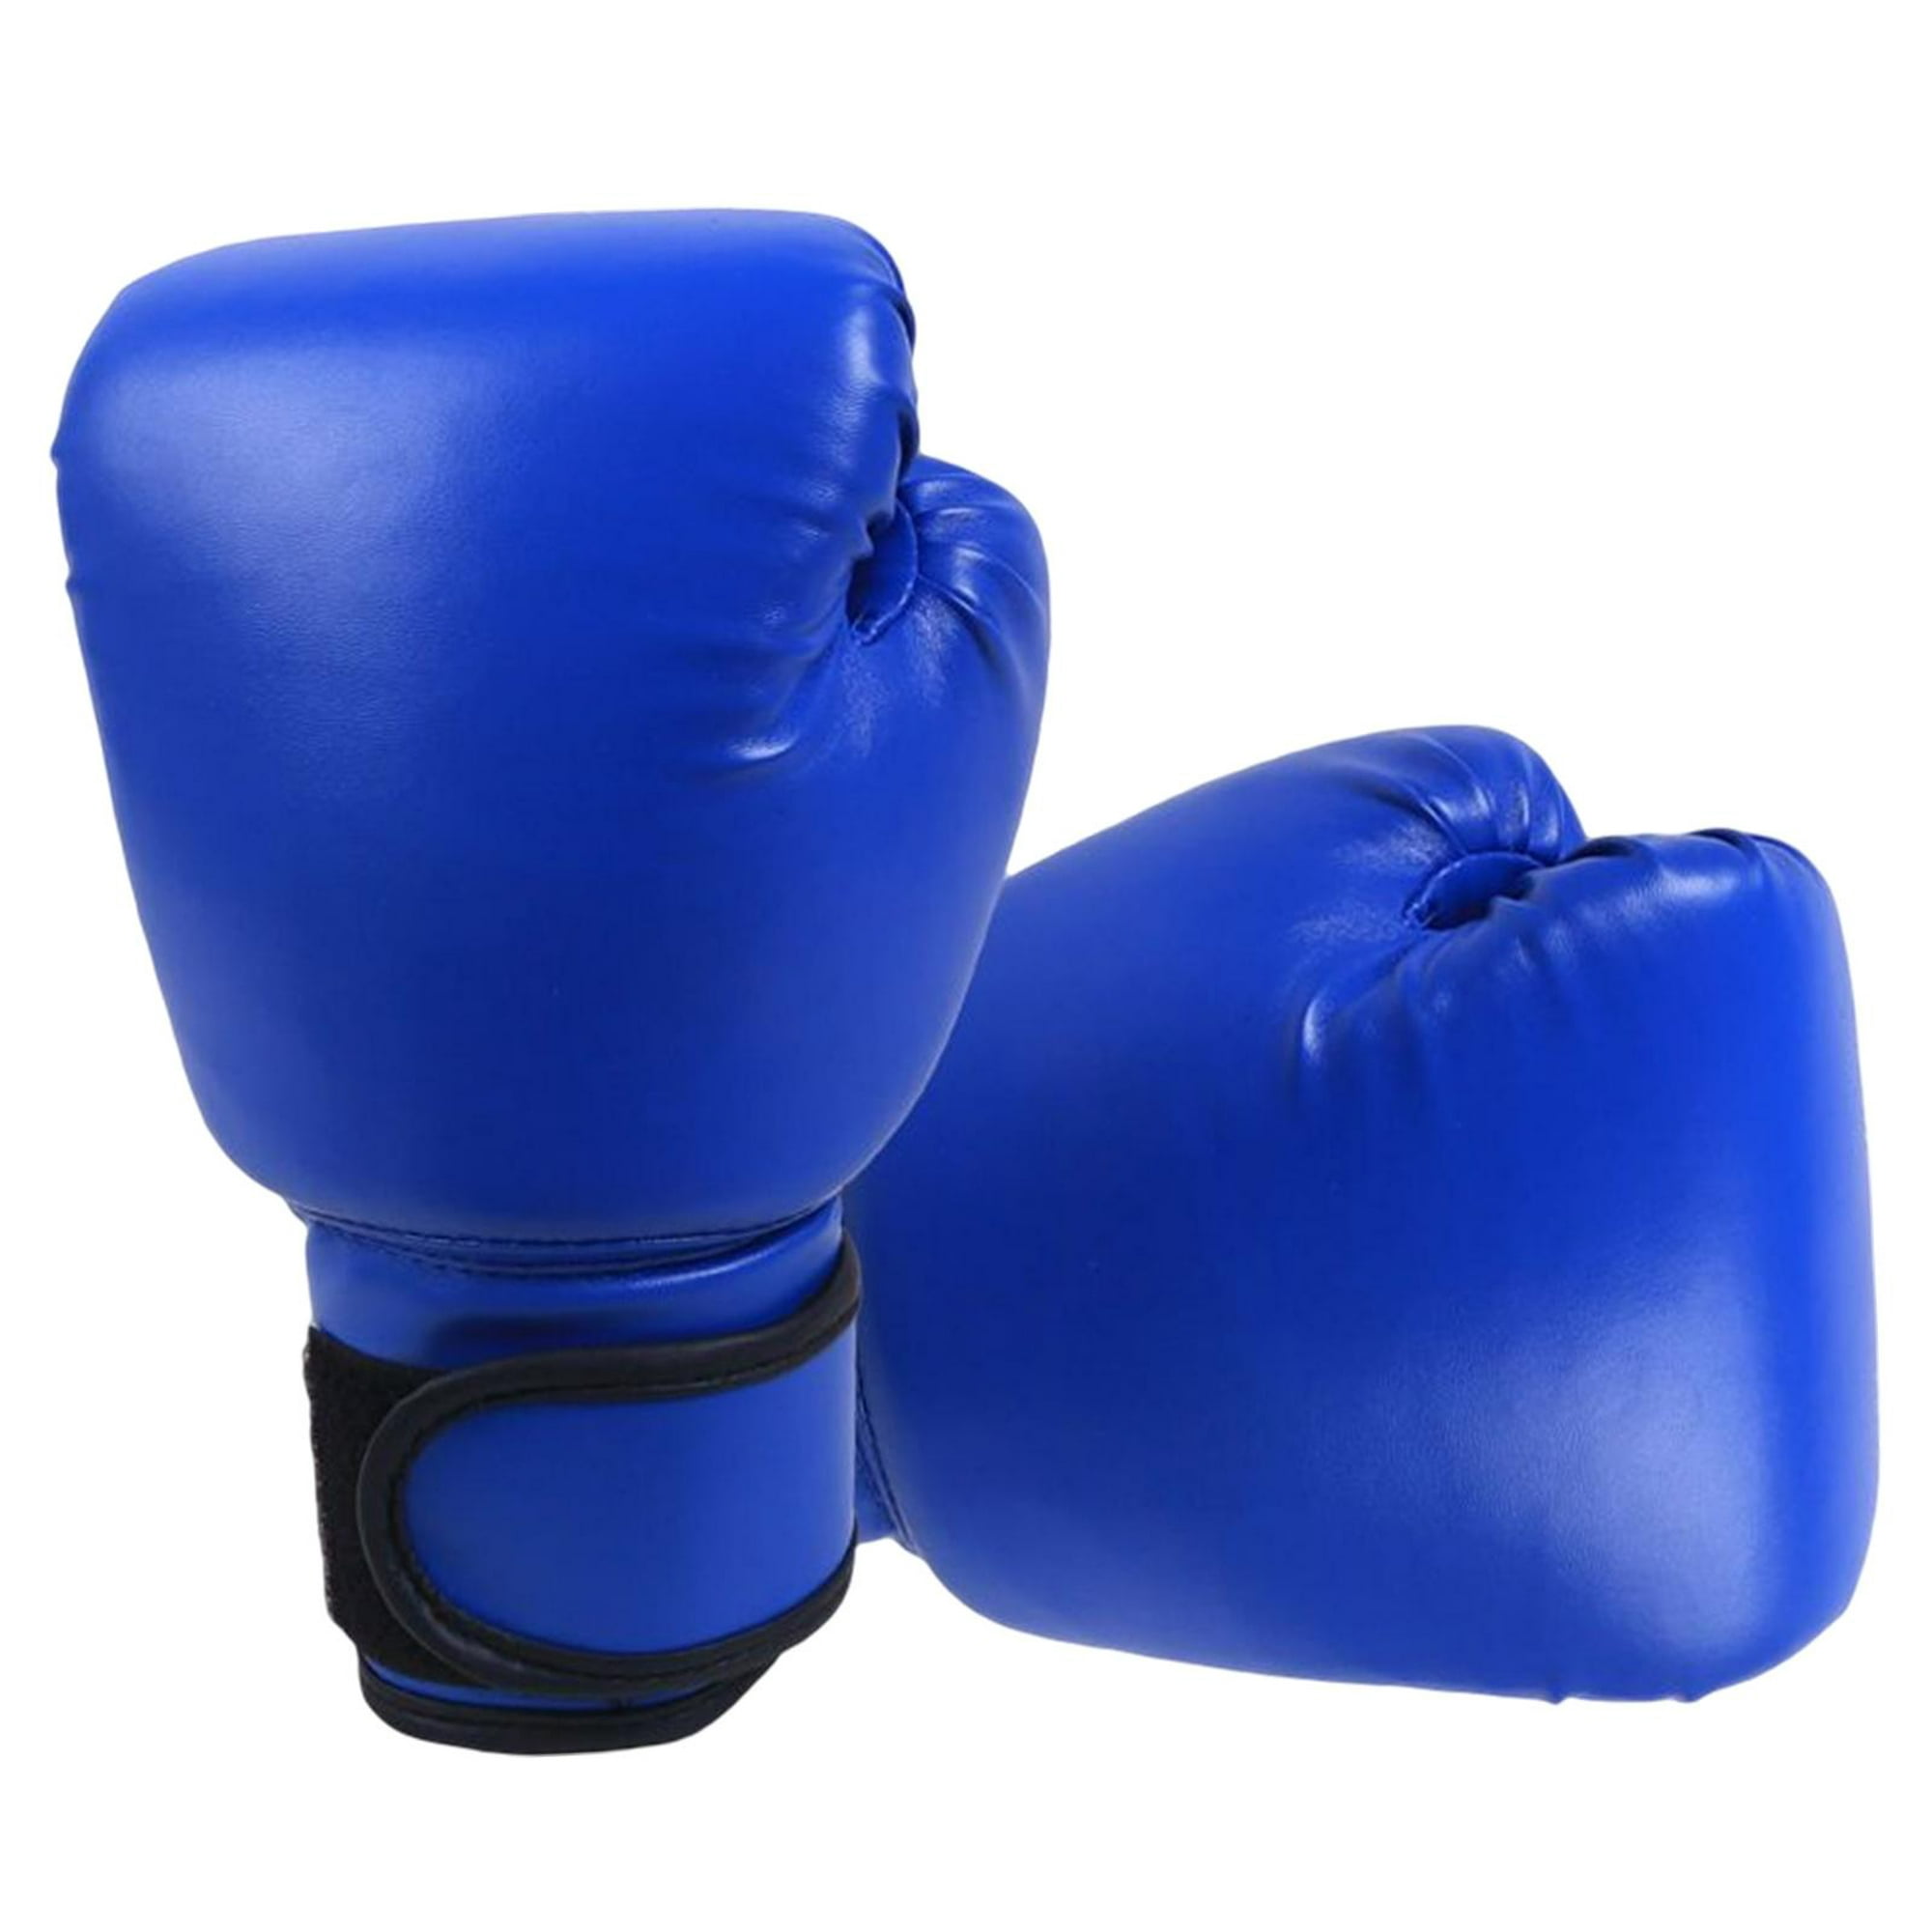 3 diferencias CLAVE entre los guantes de boxeo para hombres y mujeres